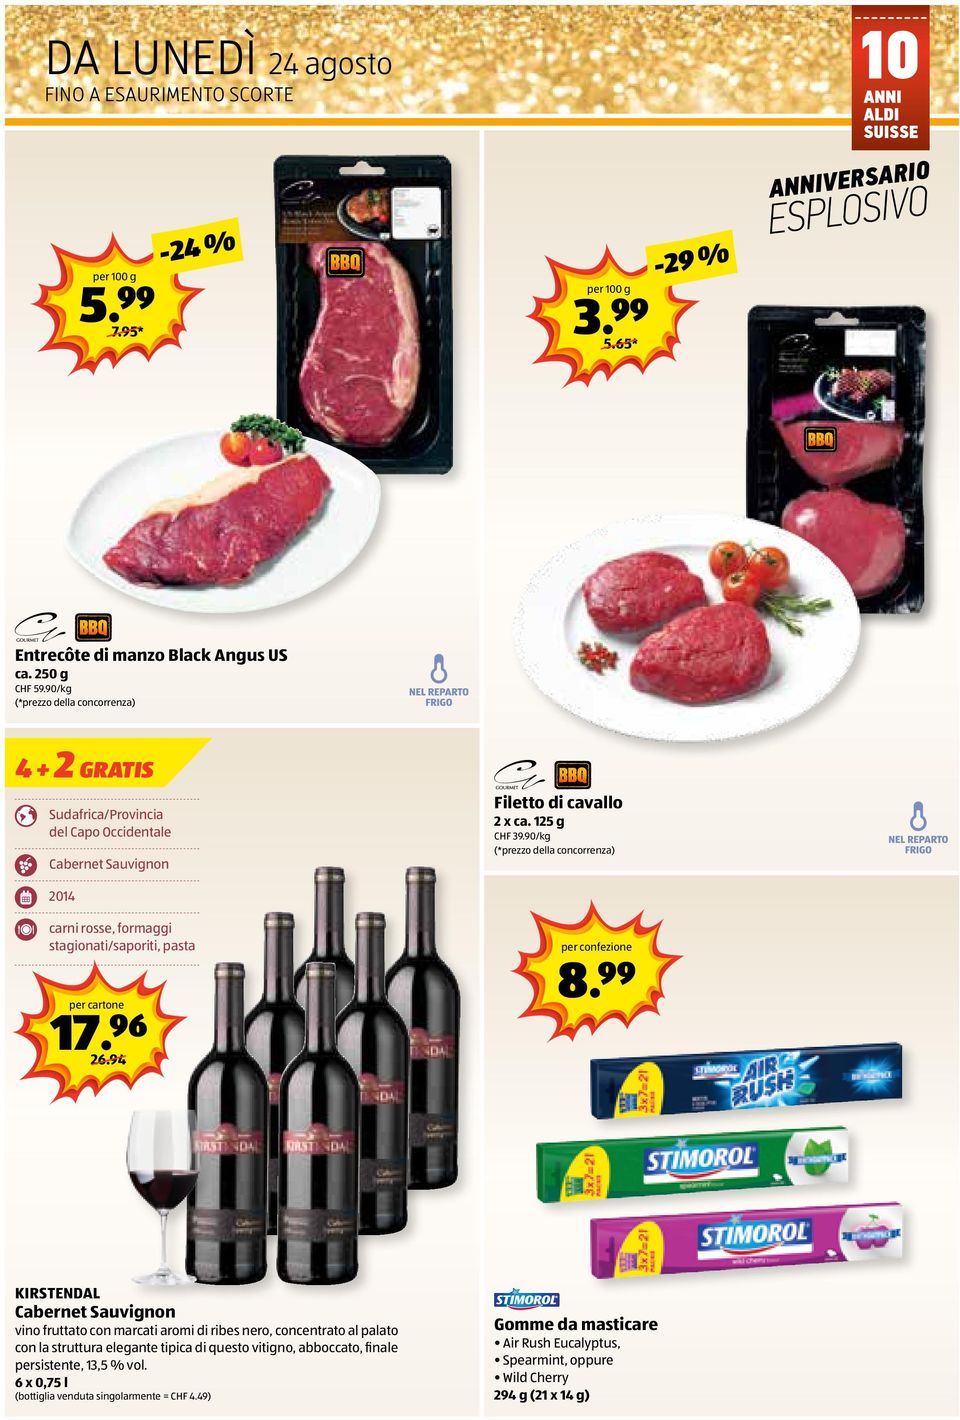 90/kg (*prezzo della concorrenza) 2014 carni rosse, formaggi stagionati/saporiti, pasta 17.96 per cartone 8.99 26.